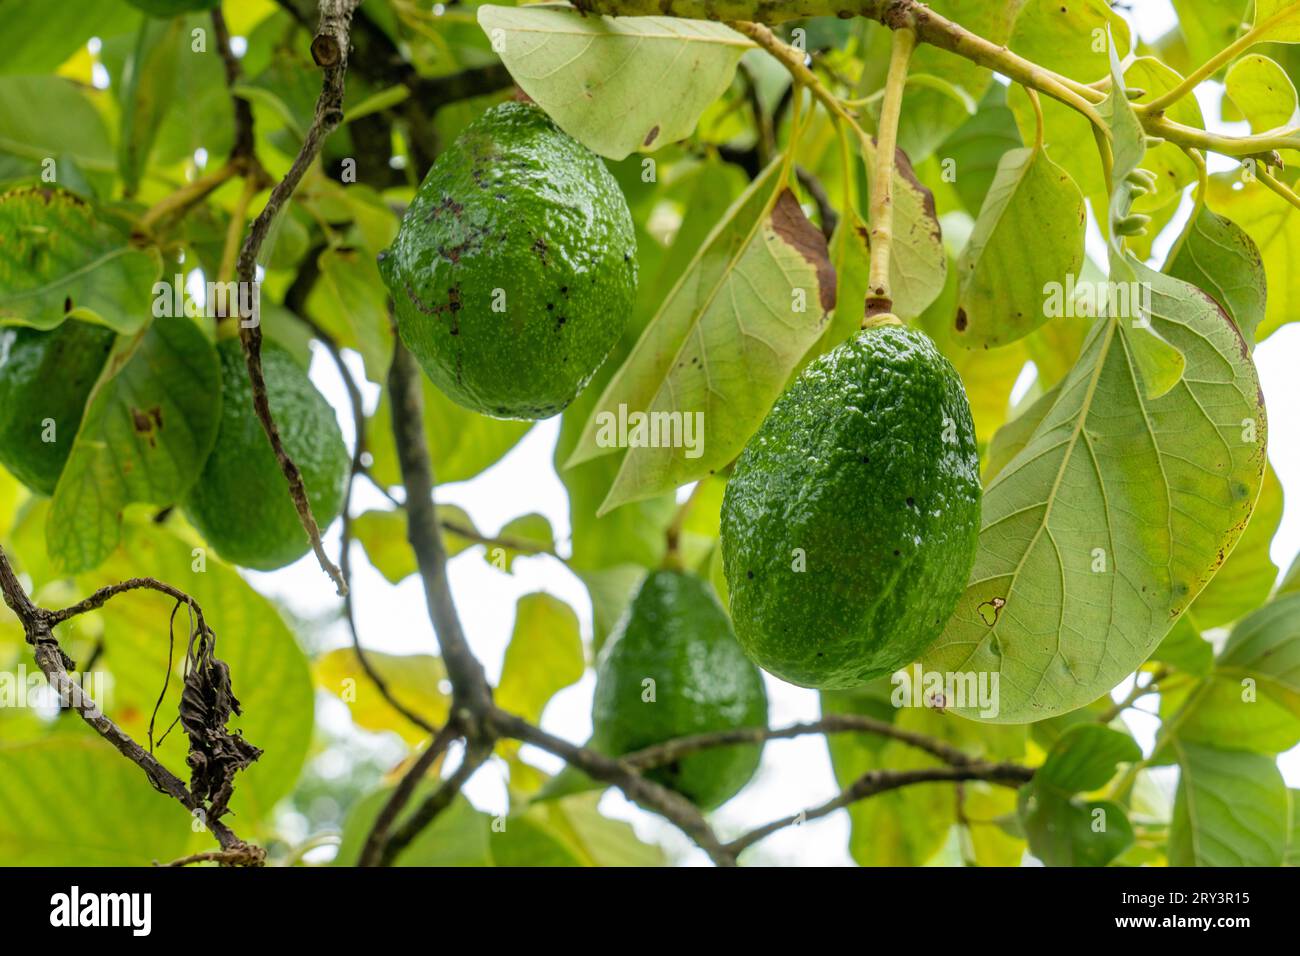 Fruit cultivant un arbre Avocado, Persea americana, dans la réserve archéologique de Caracol dans les hautes terres du Belize. Banque D'Images